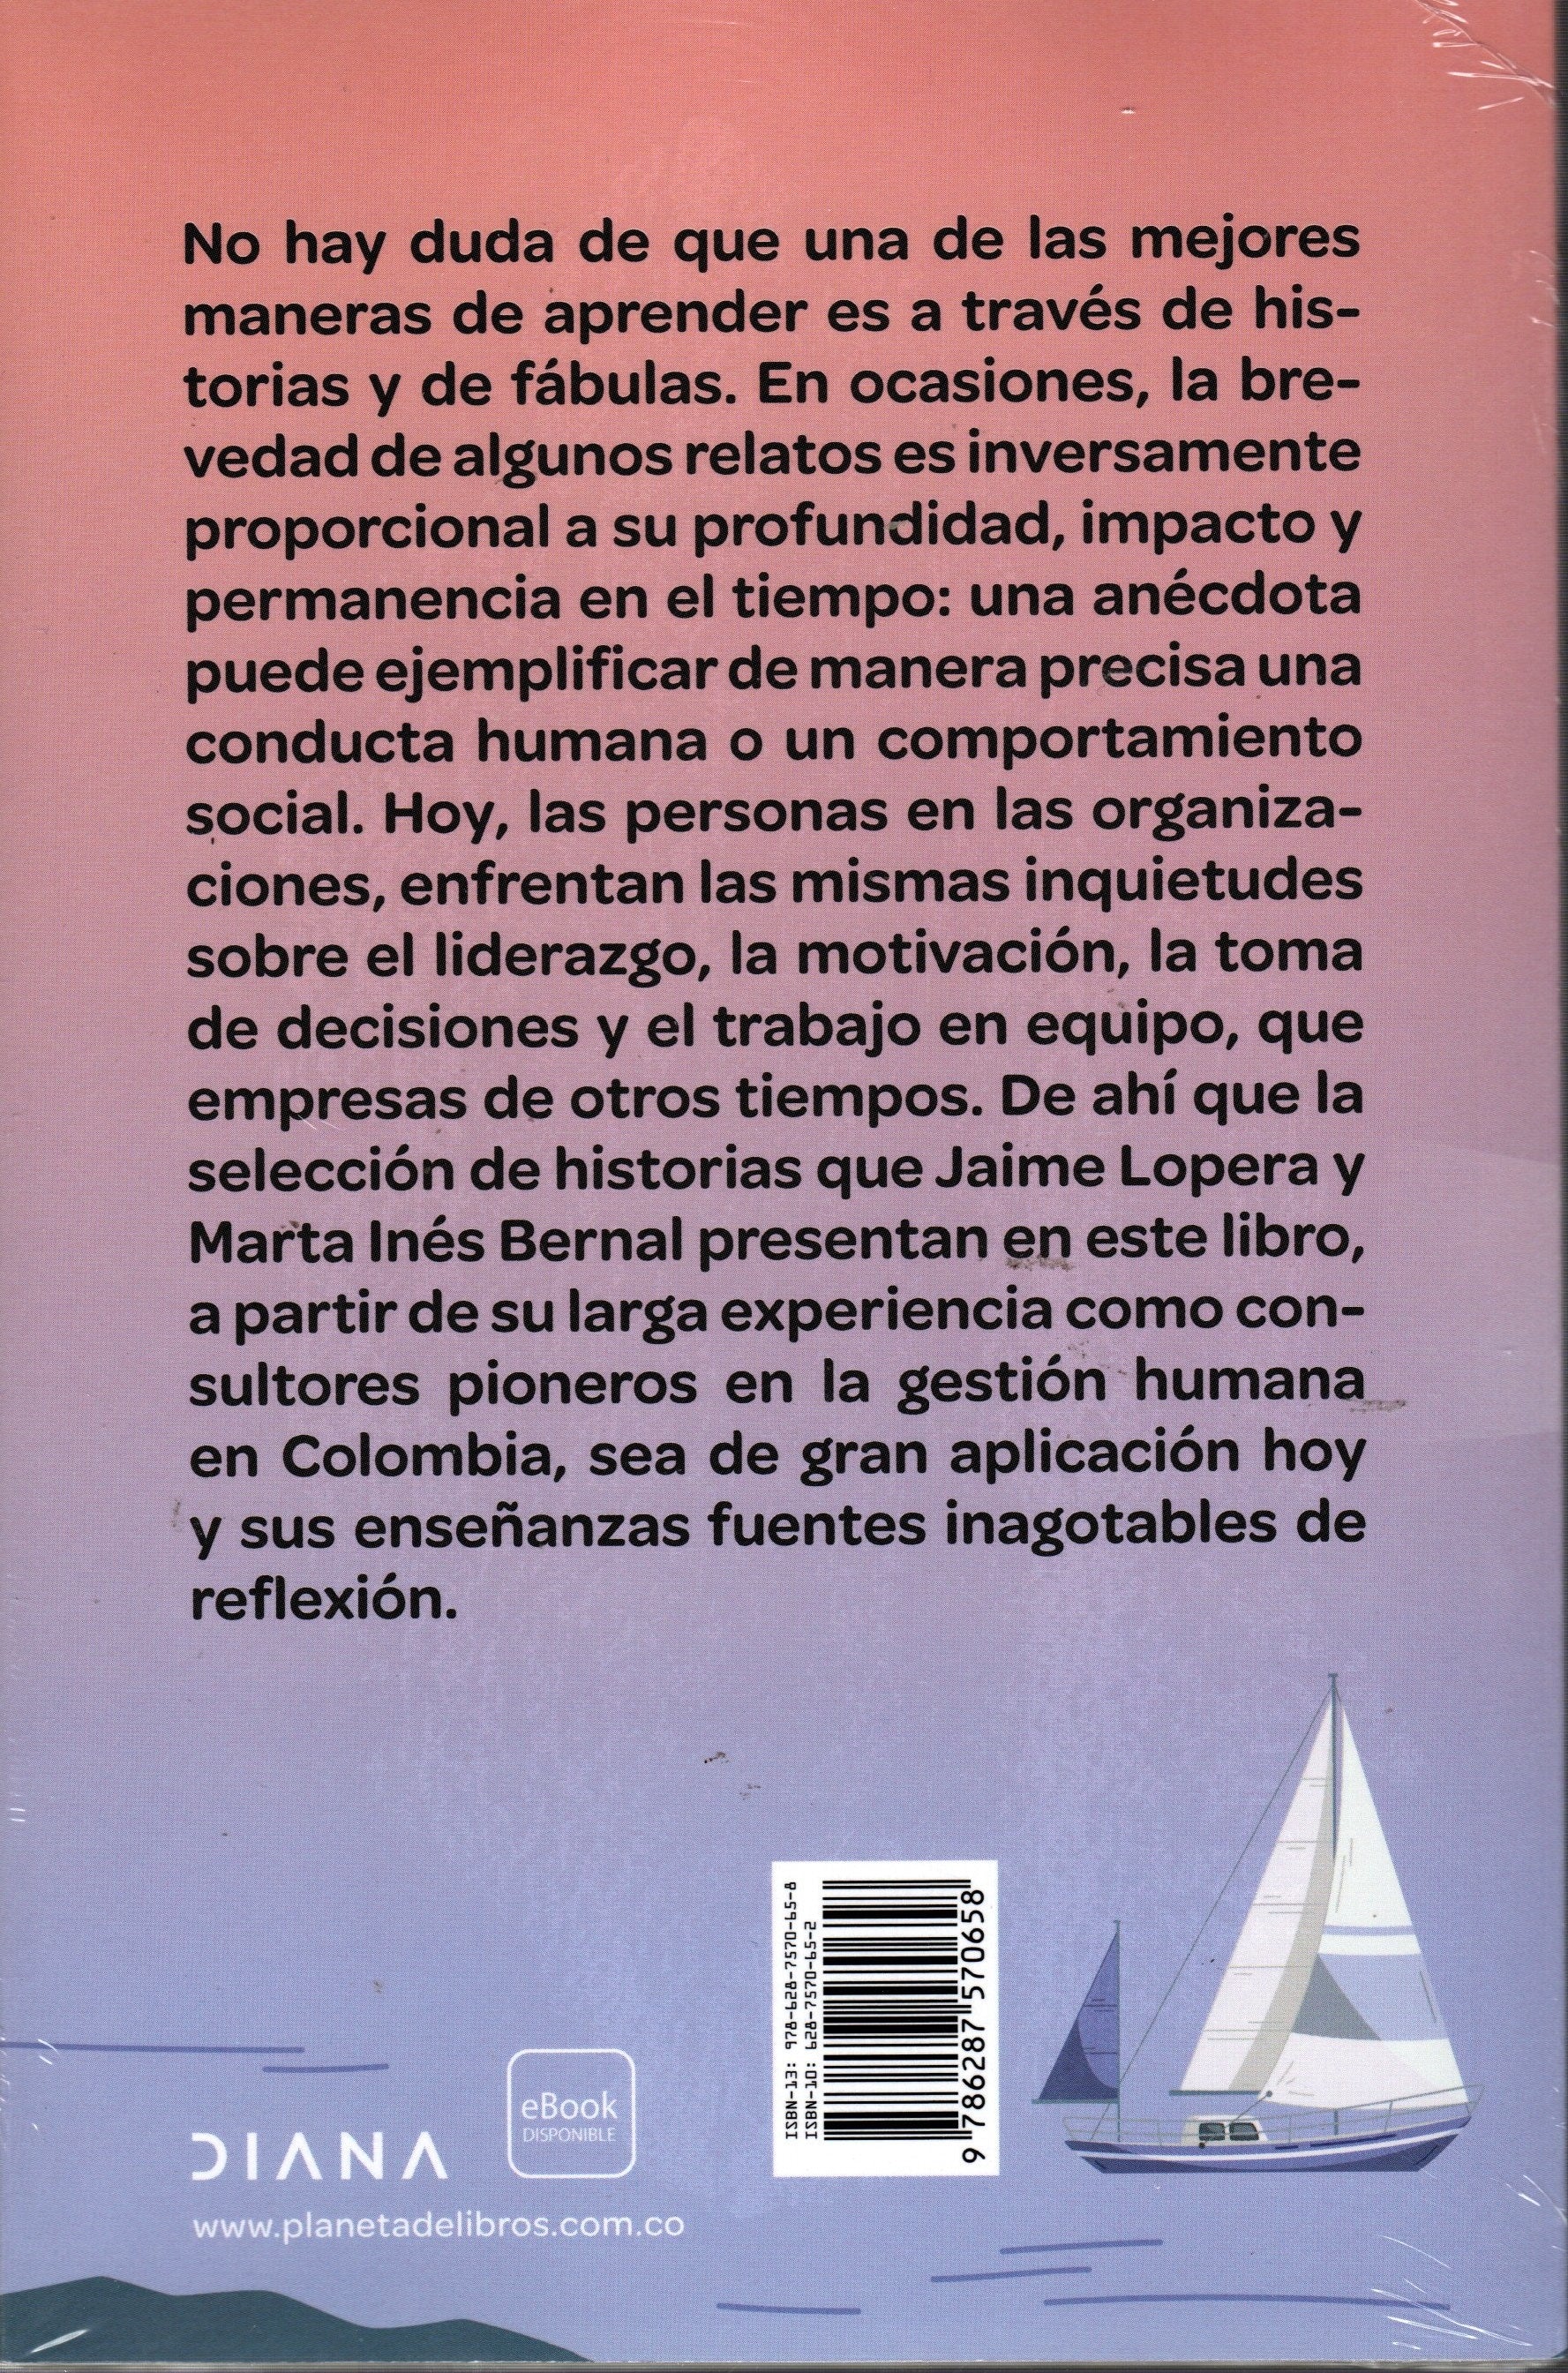 Libro Jaime Lopera / Marta Bernal - La carta a García y otras historias inspiradoras